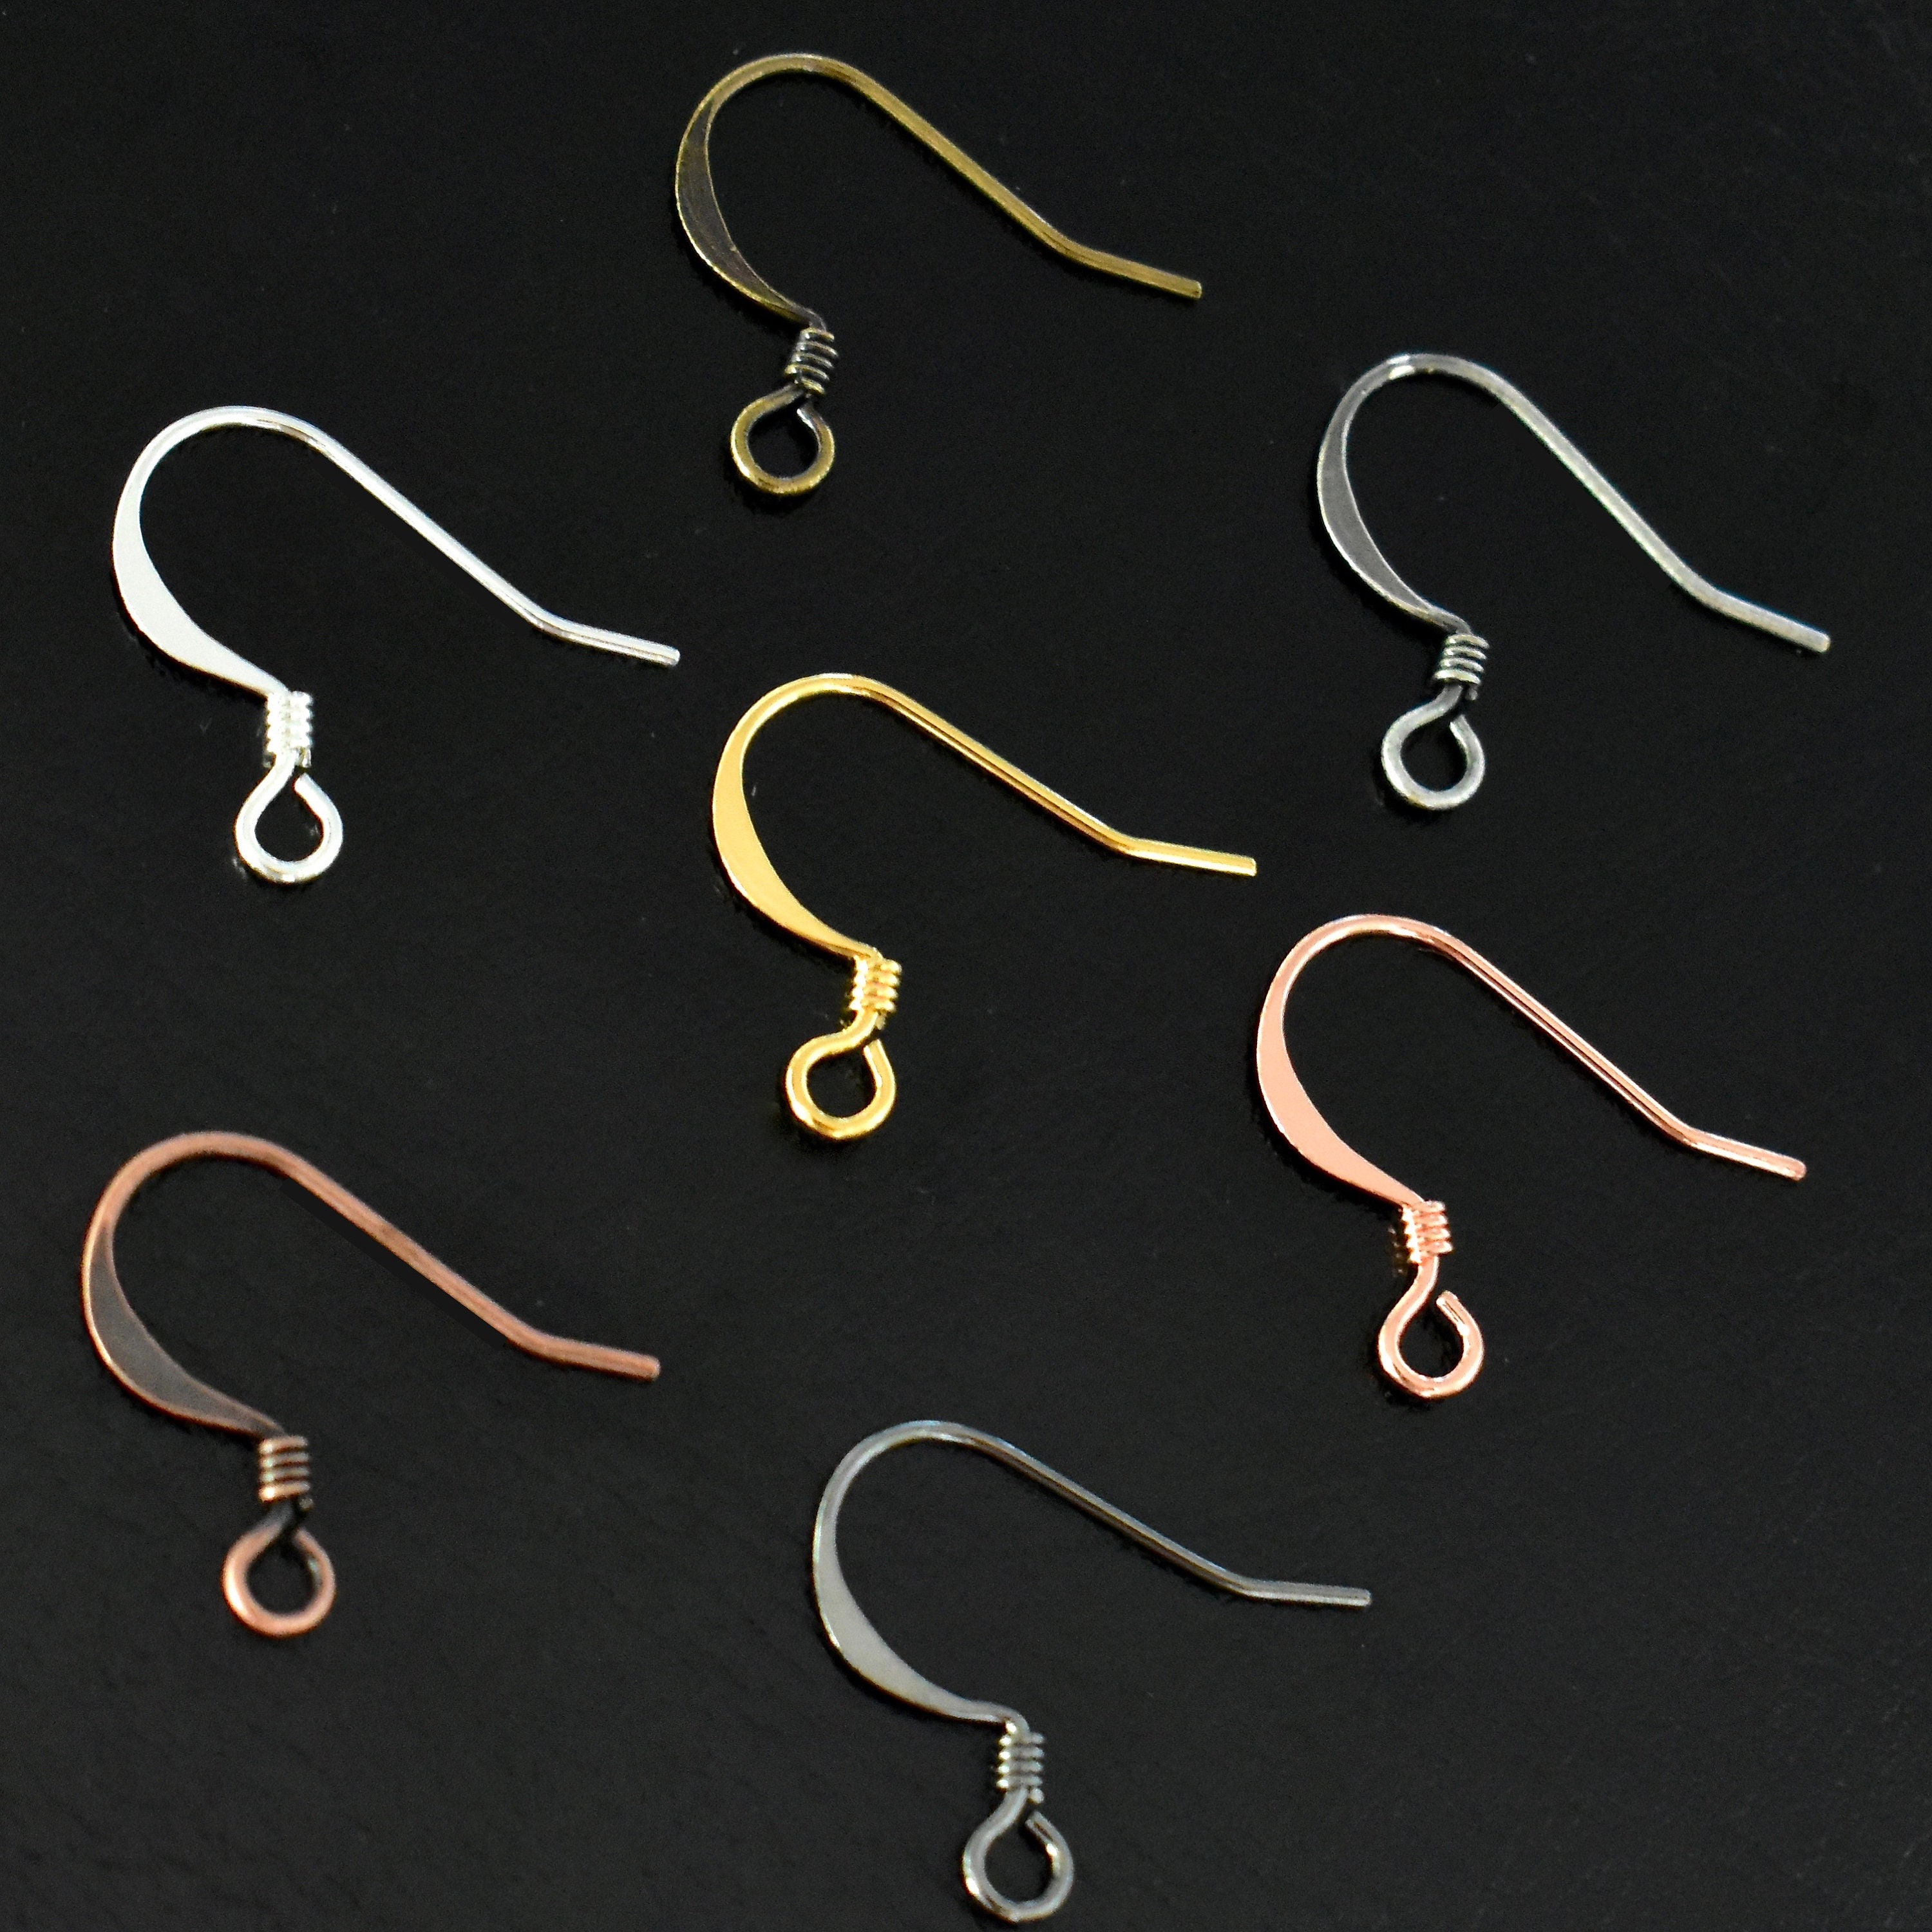  KJHBV 6pcs Earring Wires for Jewelry Making Eardrop Beads  Material C Shape Earring Hooks Earring Hook Charms Geometric Wire Earrings  Dangle Earring Hooks Ear Wire S Hook Metal Threader